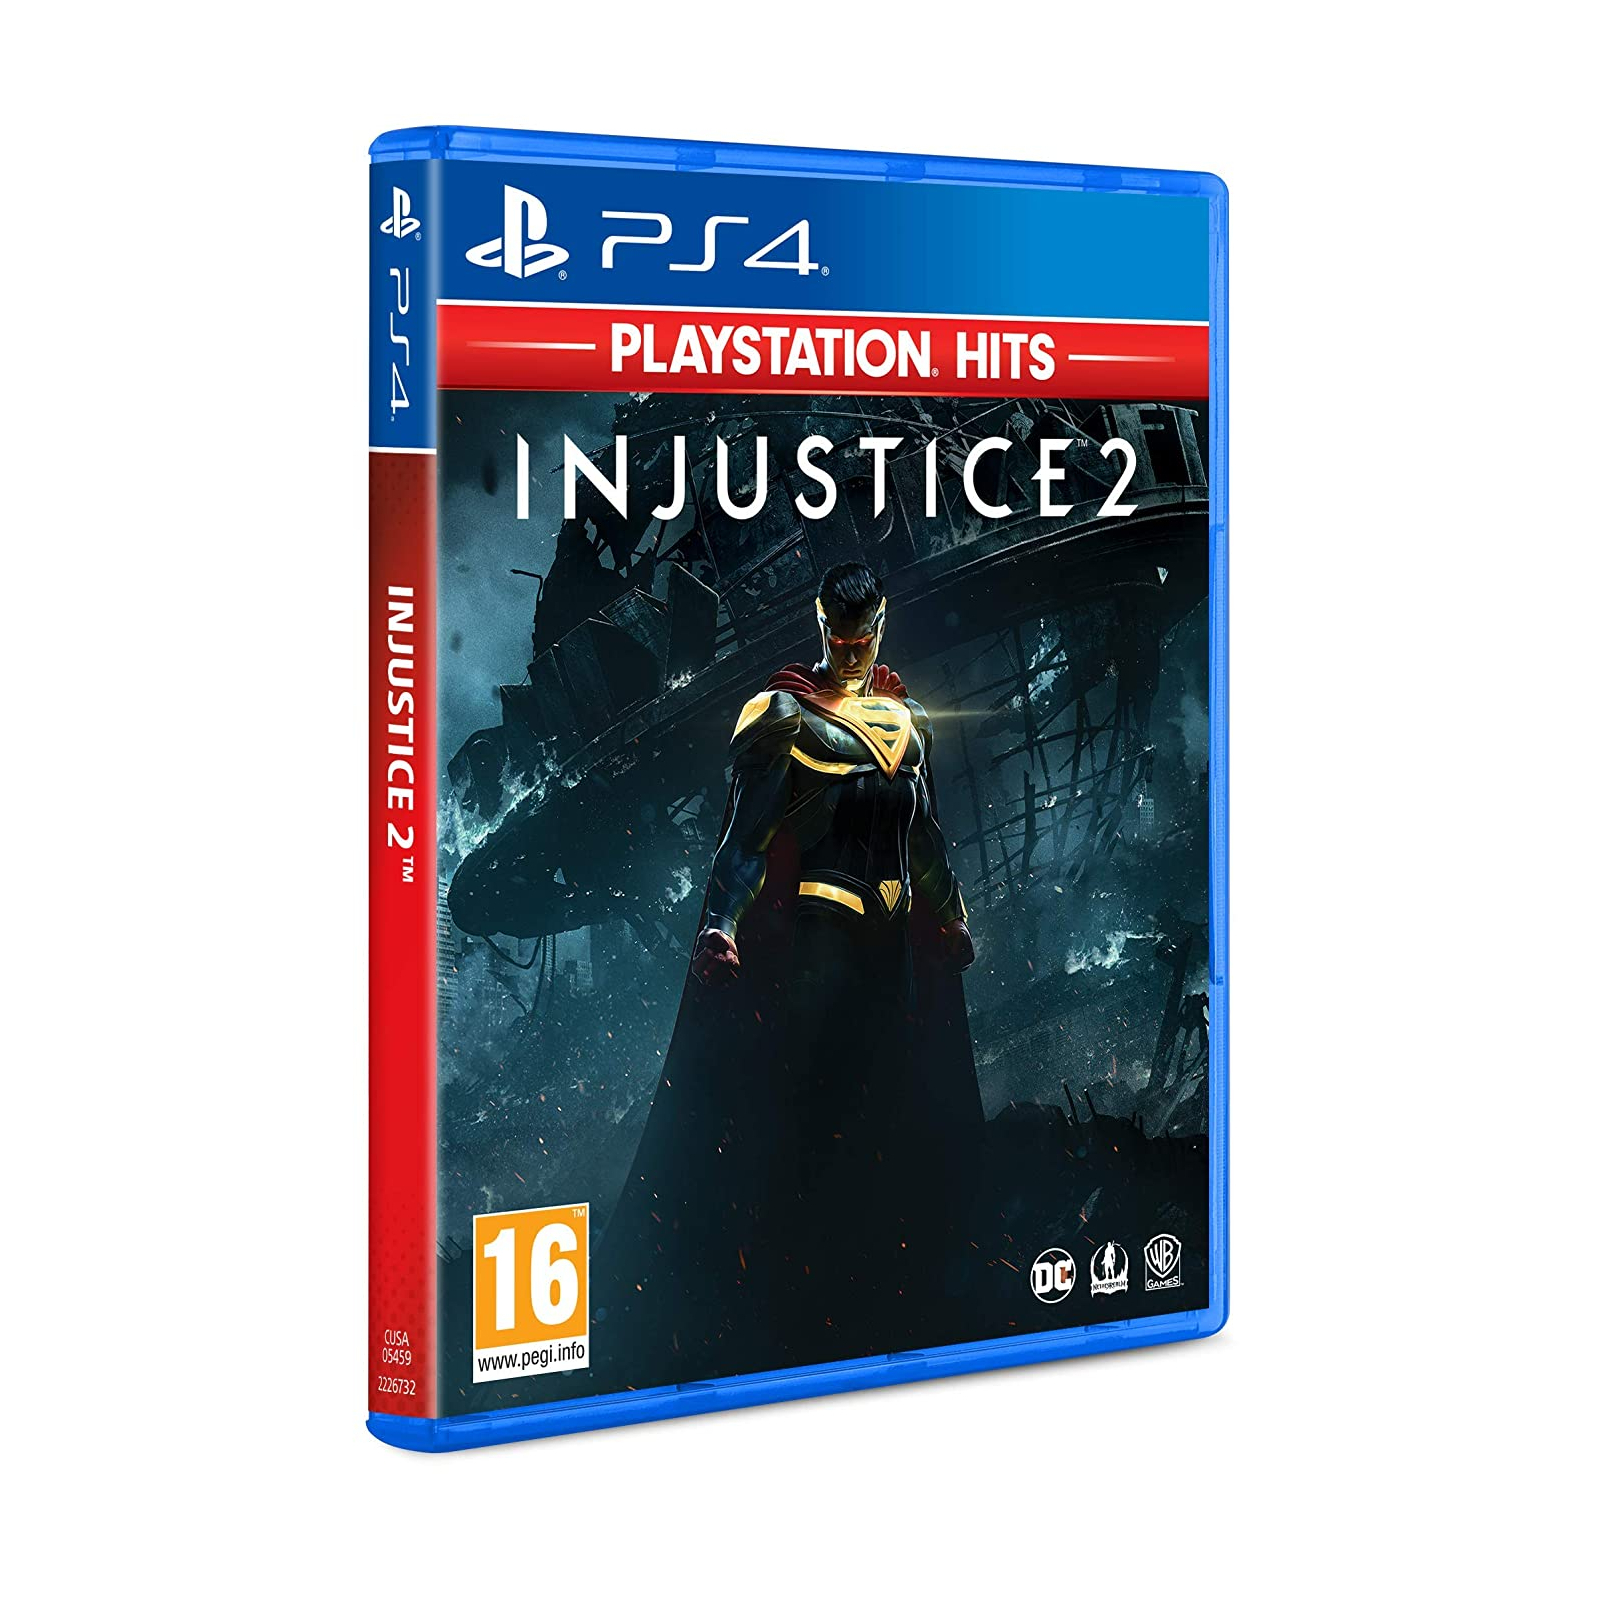 Игра Sony Injustice 2 (PlayStation Hits), BD диск (5051890322043) изображение 2